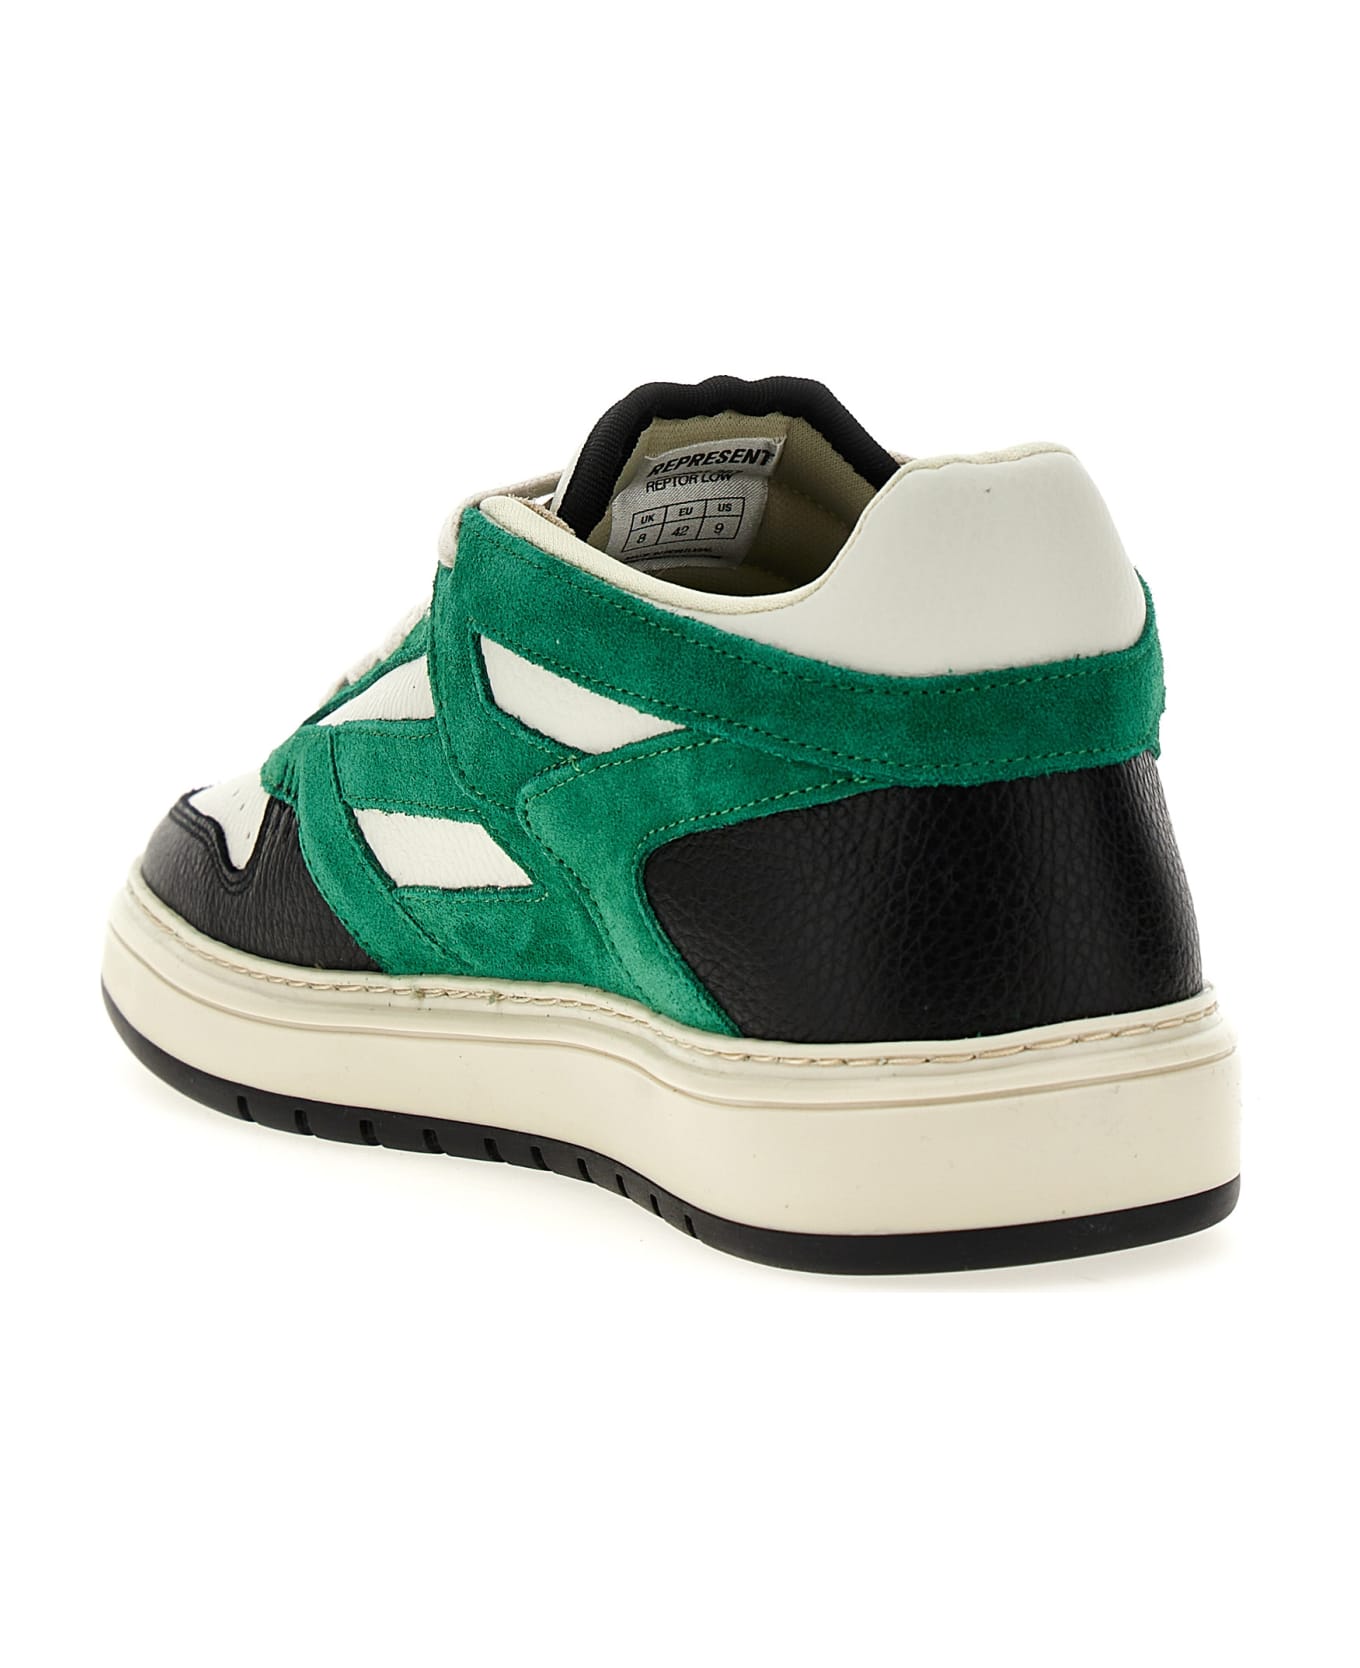 REPRESENT 'reptor' Sneakers - Green スニーカー